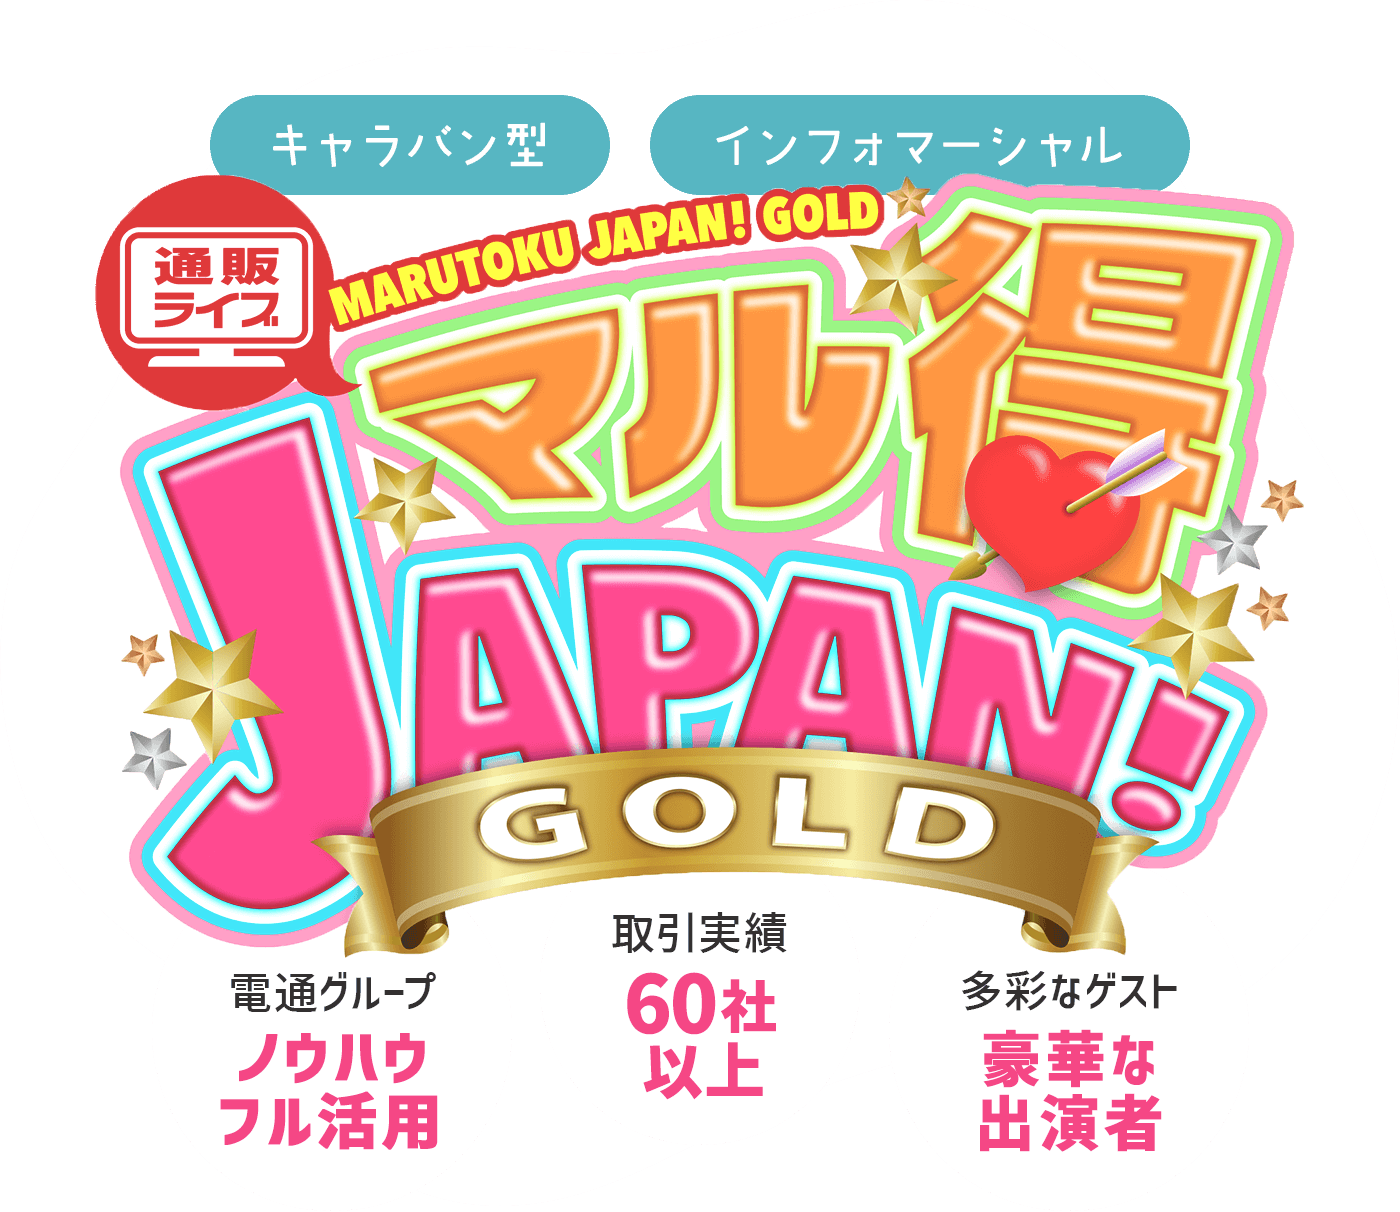 キャラバン型・インフォマーシャル通販ライブマル得JAPAN!GOLD 電通グループノウハウフル活用・取引実績60社以上・多彩なゲスト豪華な出演者